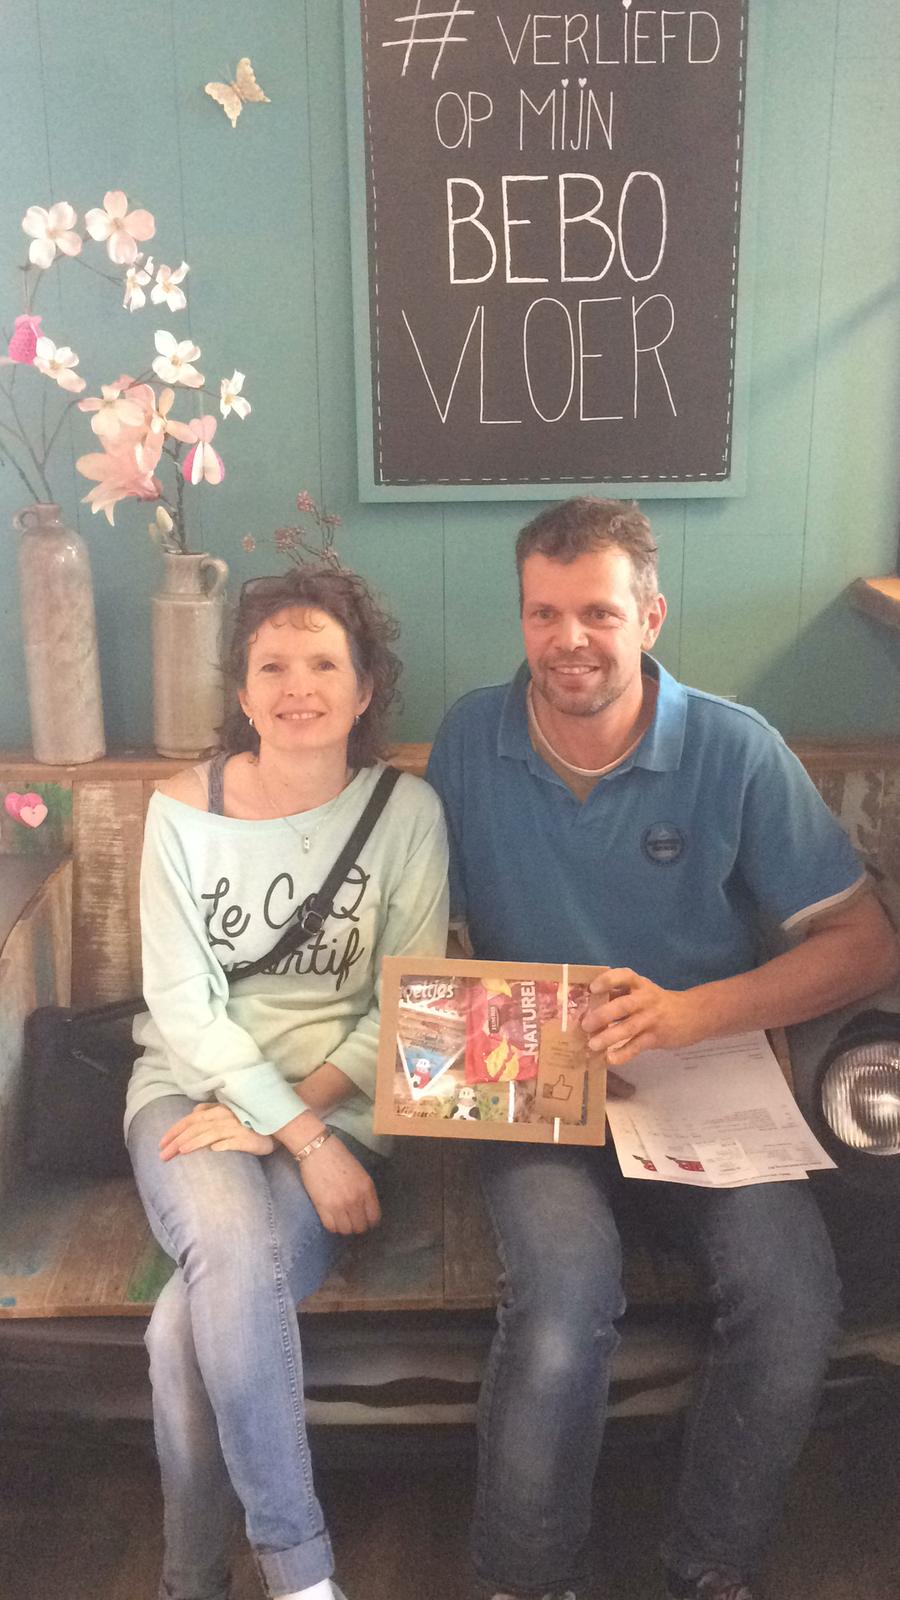 Björn & Anita uit Helmond zijn super blij met de servic van Bebo